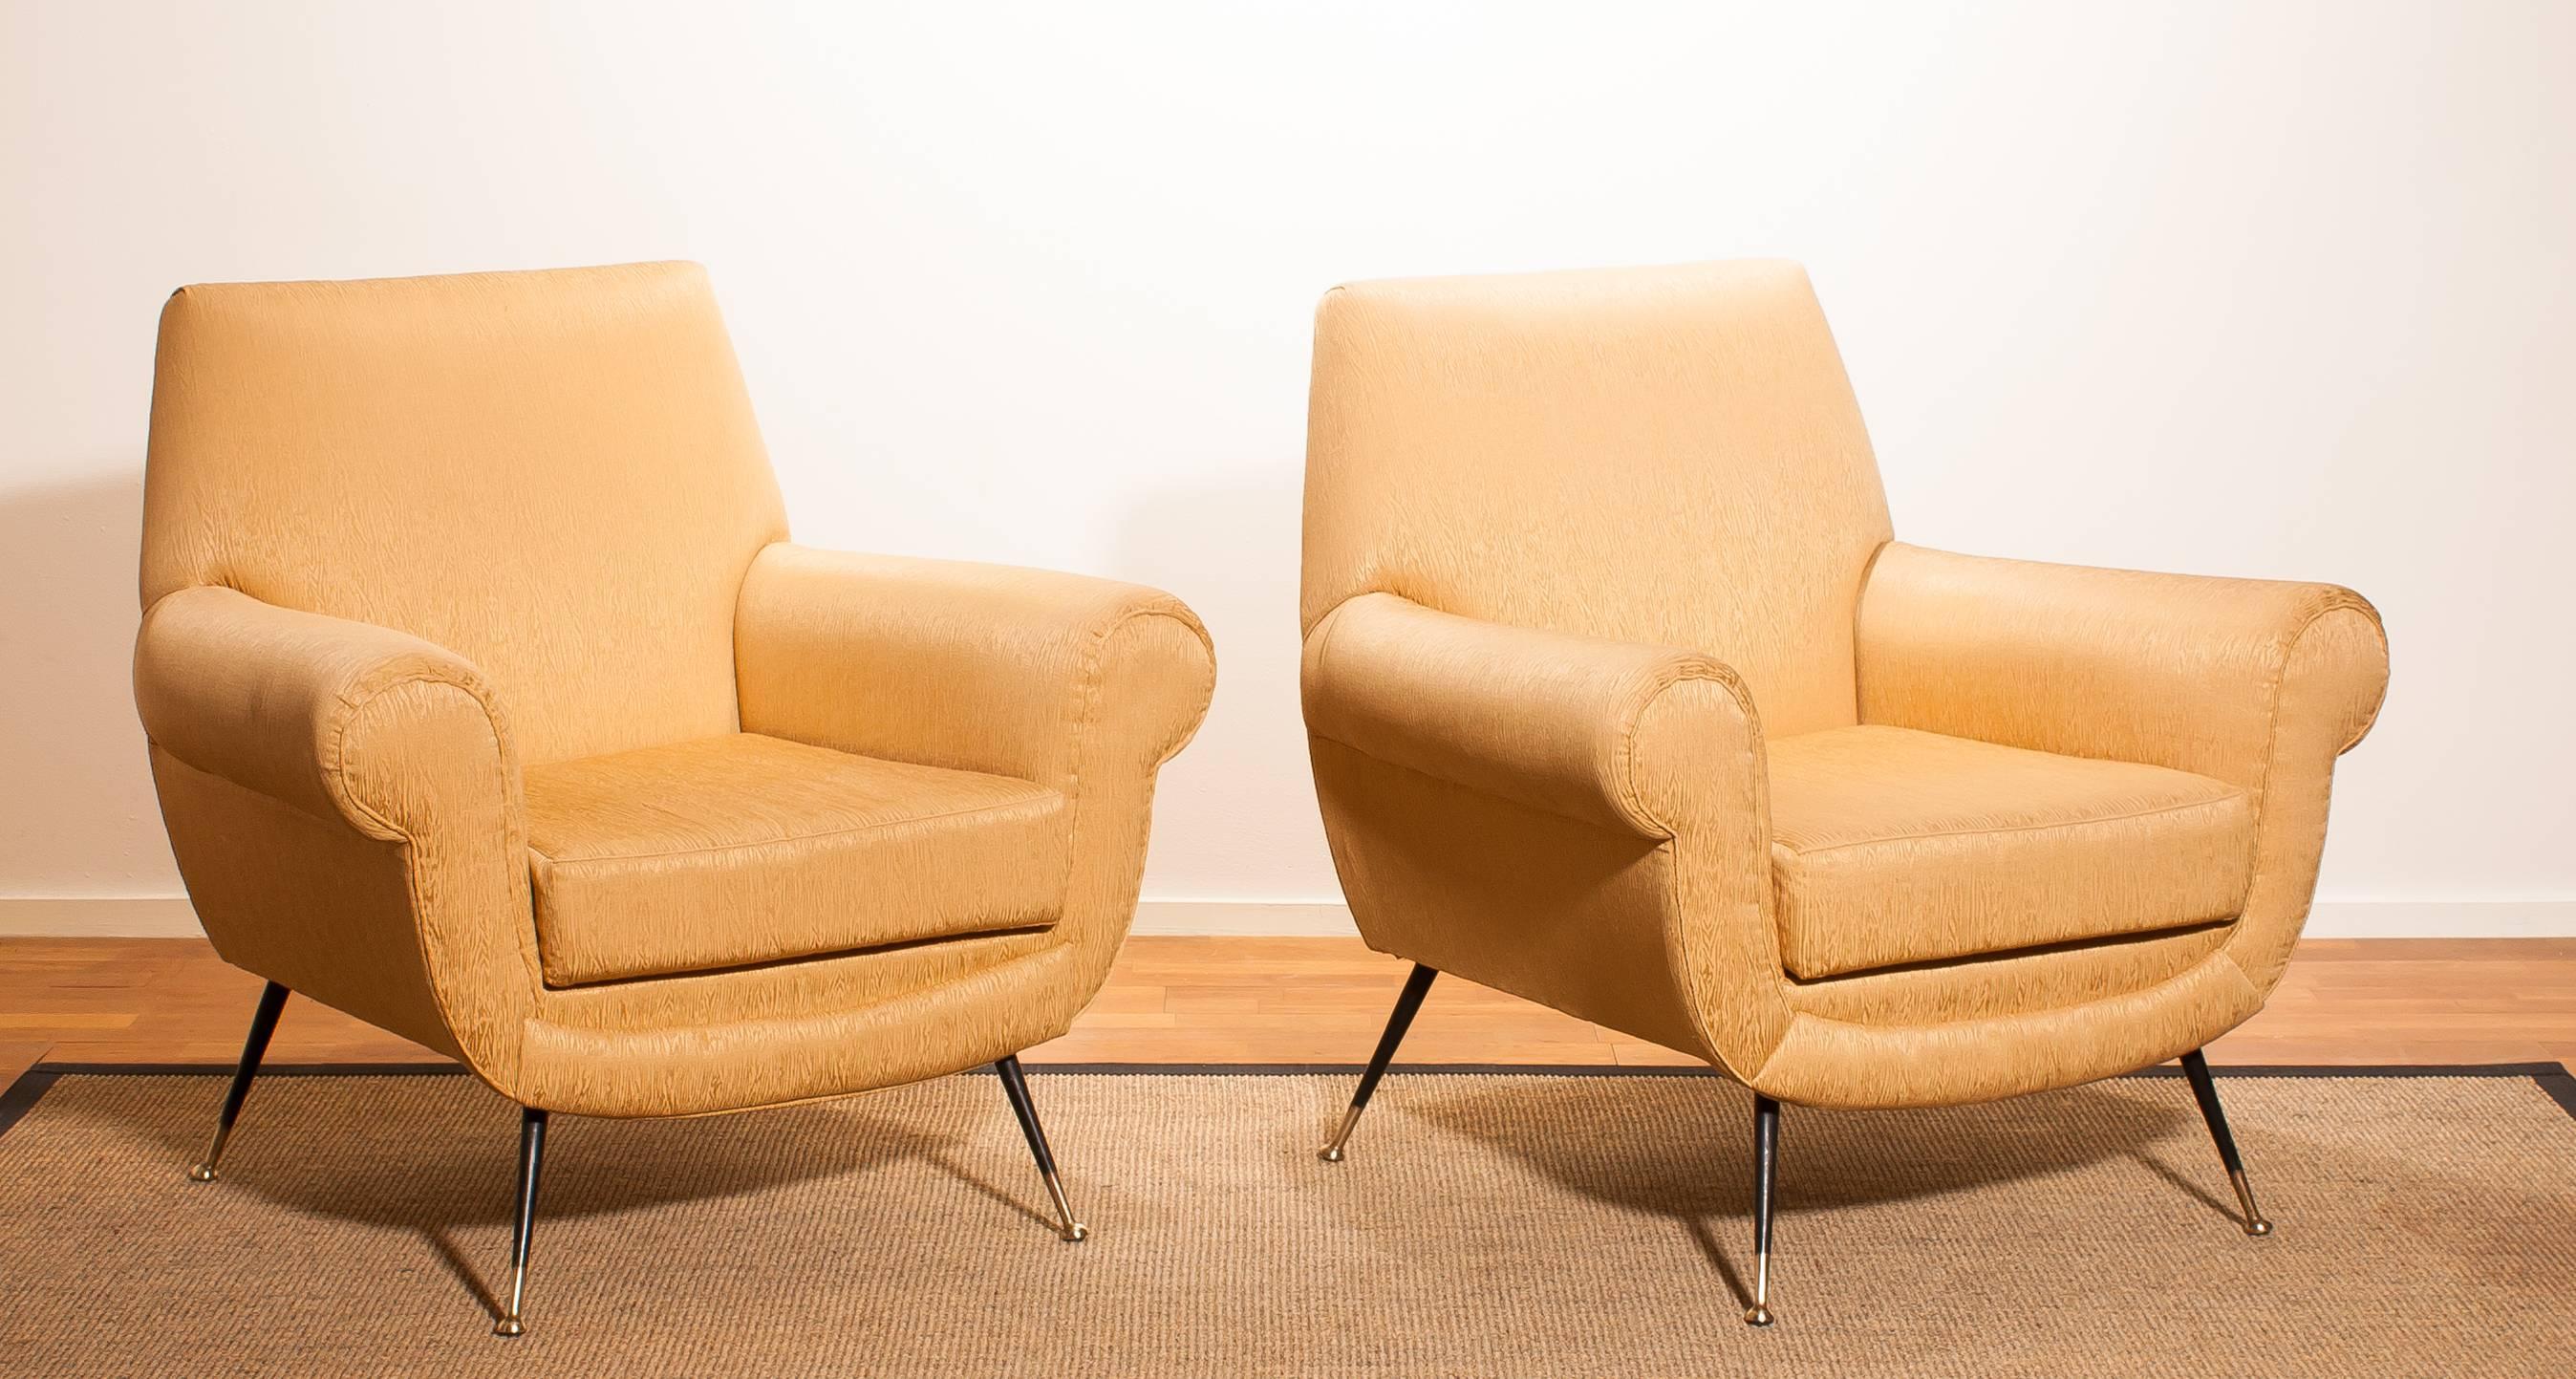 Golden Jacquard Upholstered Easy Chairs by Gigi Radice for Minotti, Brass Legs. 4